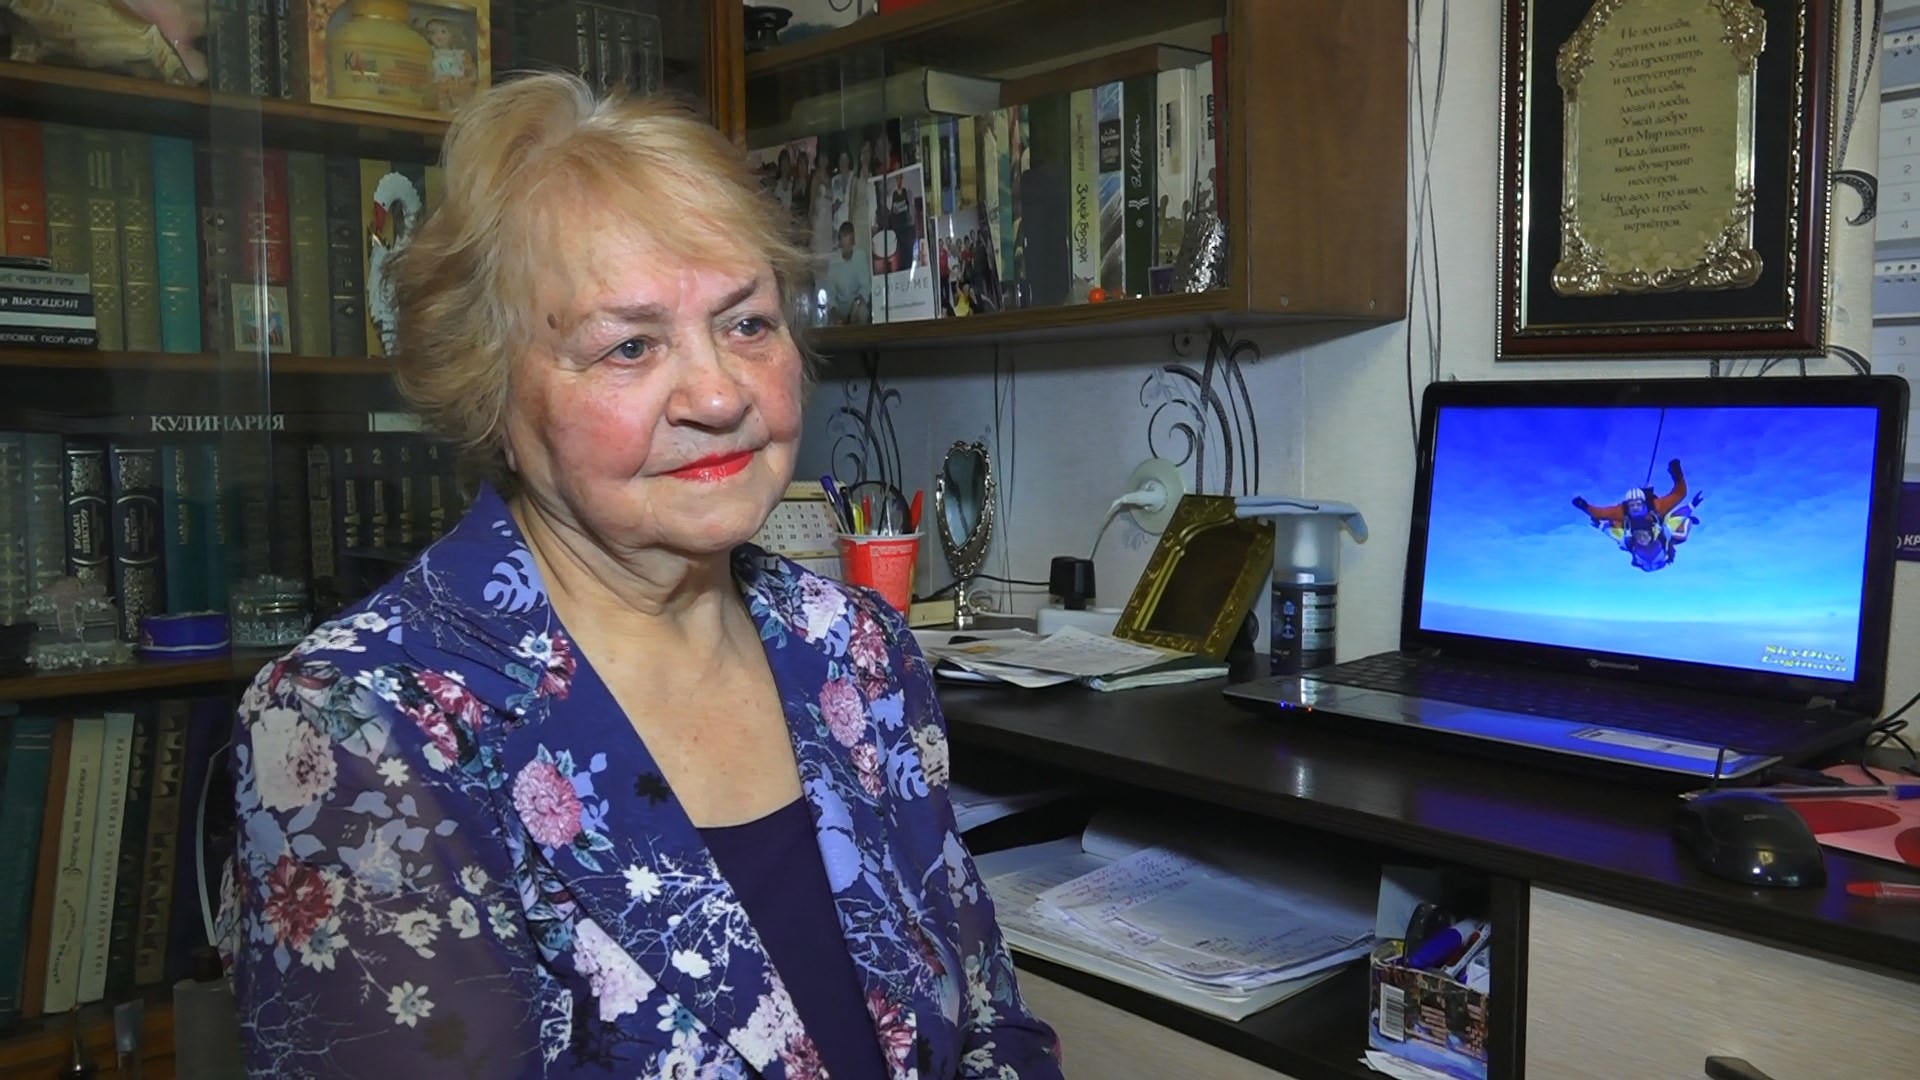 Отважная бабушка! Прыжок с парашютом совершила  80-летняя жительница Екатеринбурга